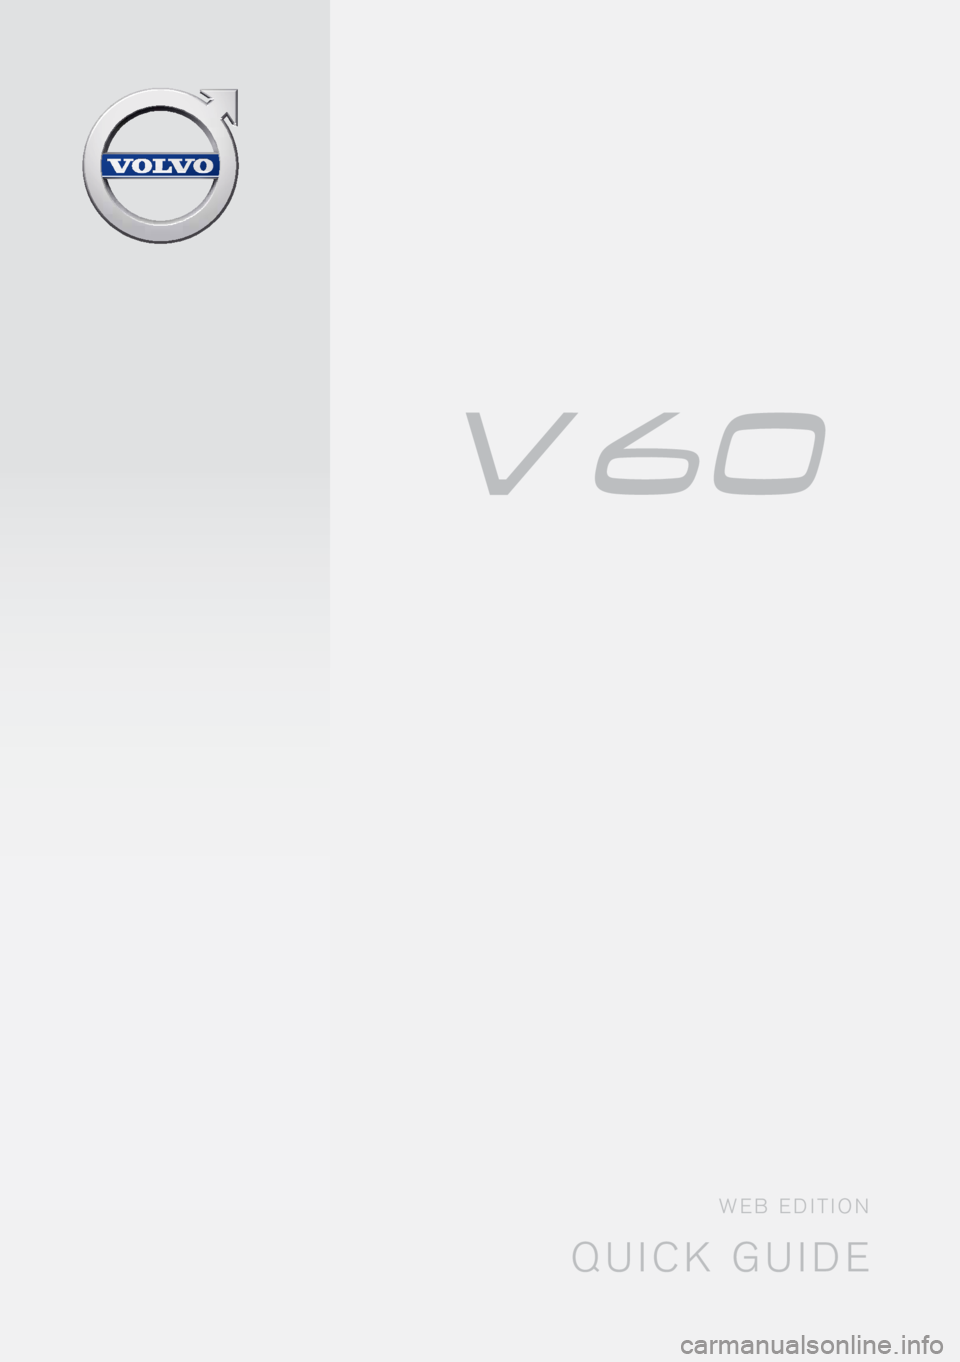 VOLVO V60 2016  Quick Guide QUICK GUIDE
WEB EDITION 